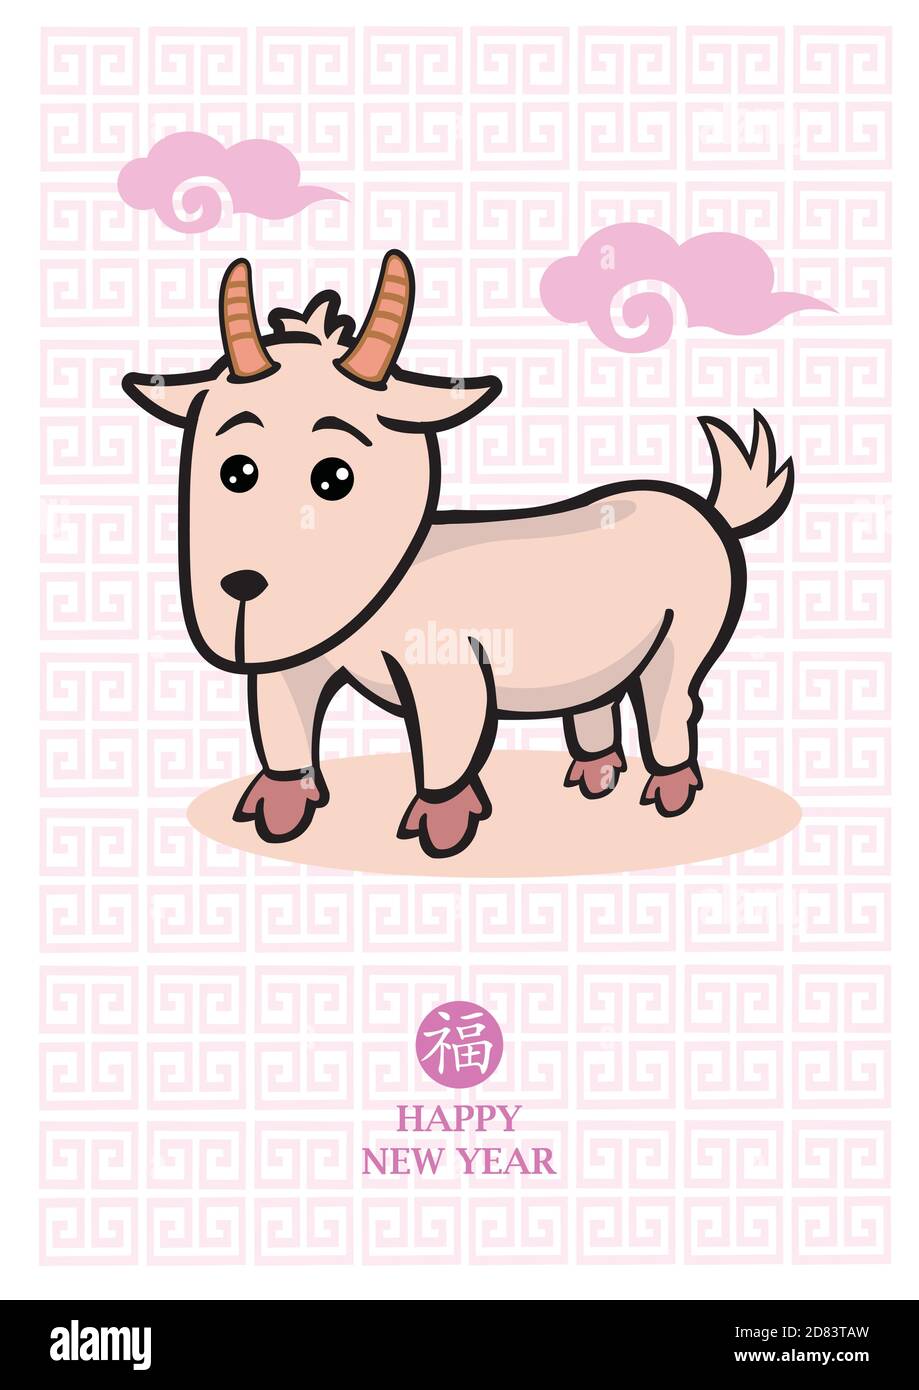 Illustrazione vettoriale di una carina capra cartoon con motivo orientale rosa. Il carattere cinese in cerchio dice, fu, che significa Buona fortuna. Illustrazione Vettoriale